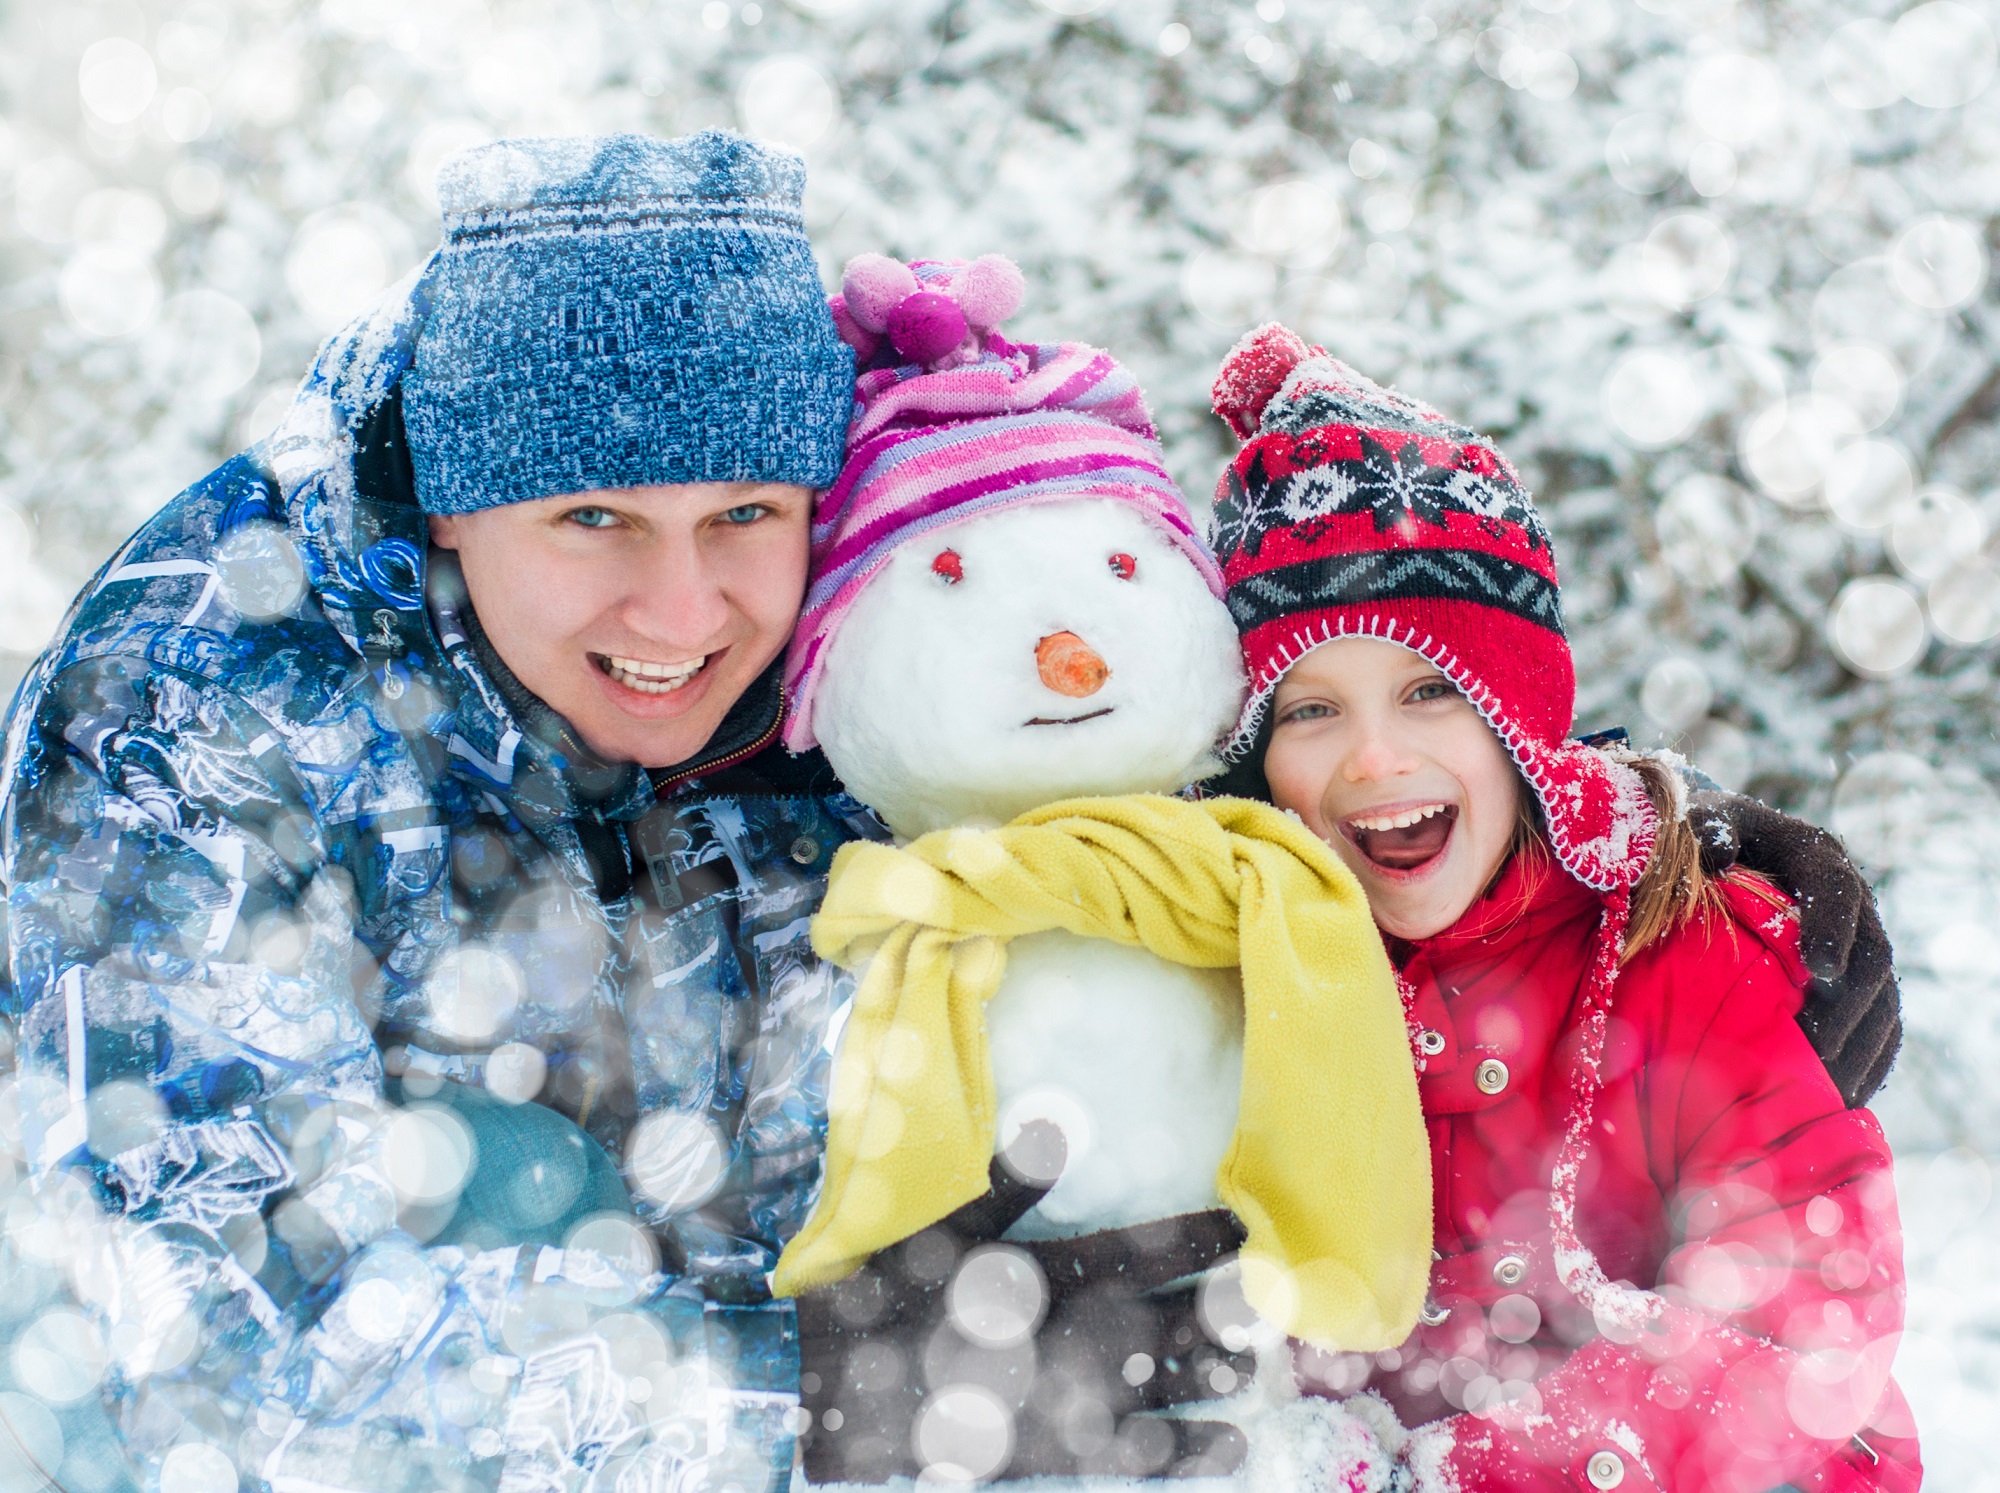 Календарь зимних праздников 2018 года. Источник фото: Shutterstock